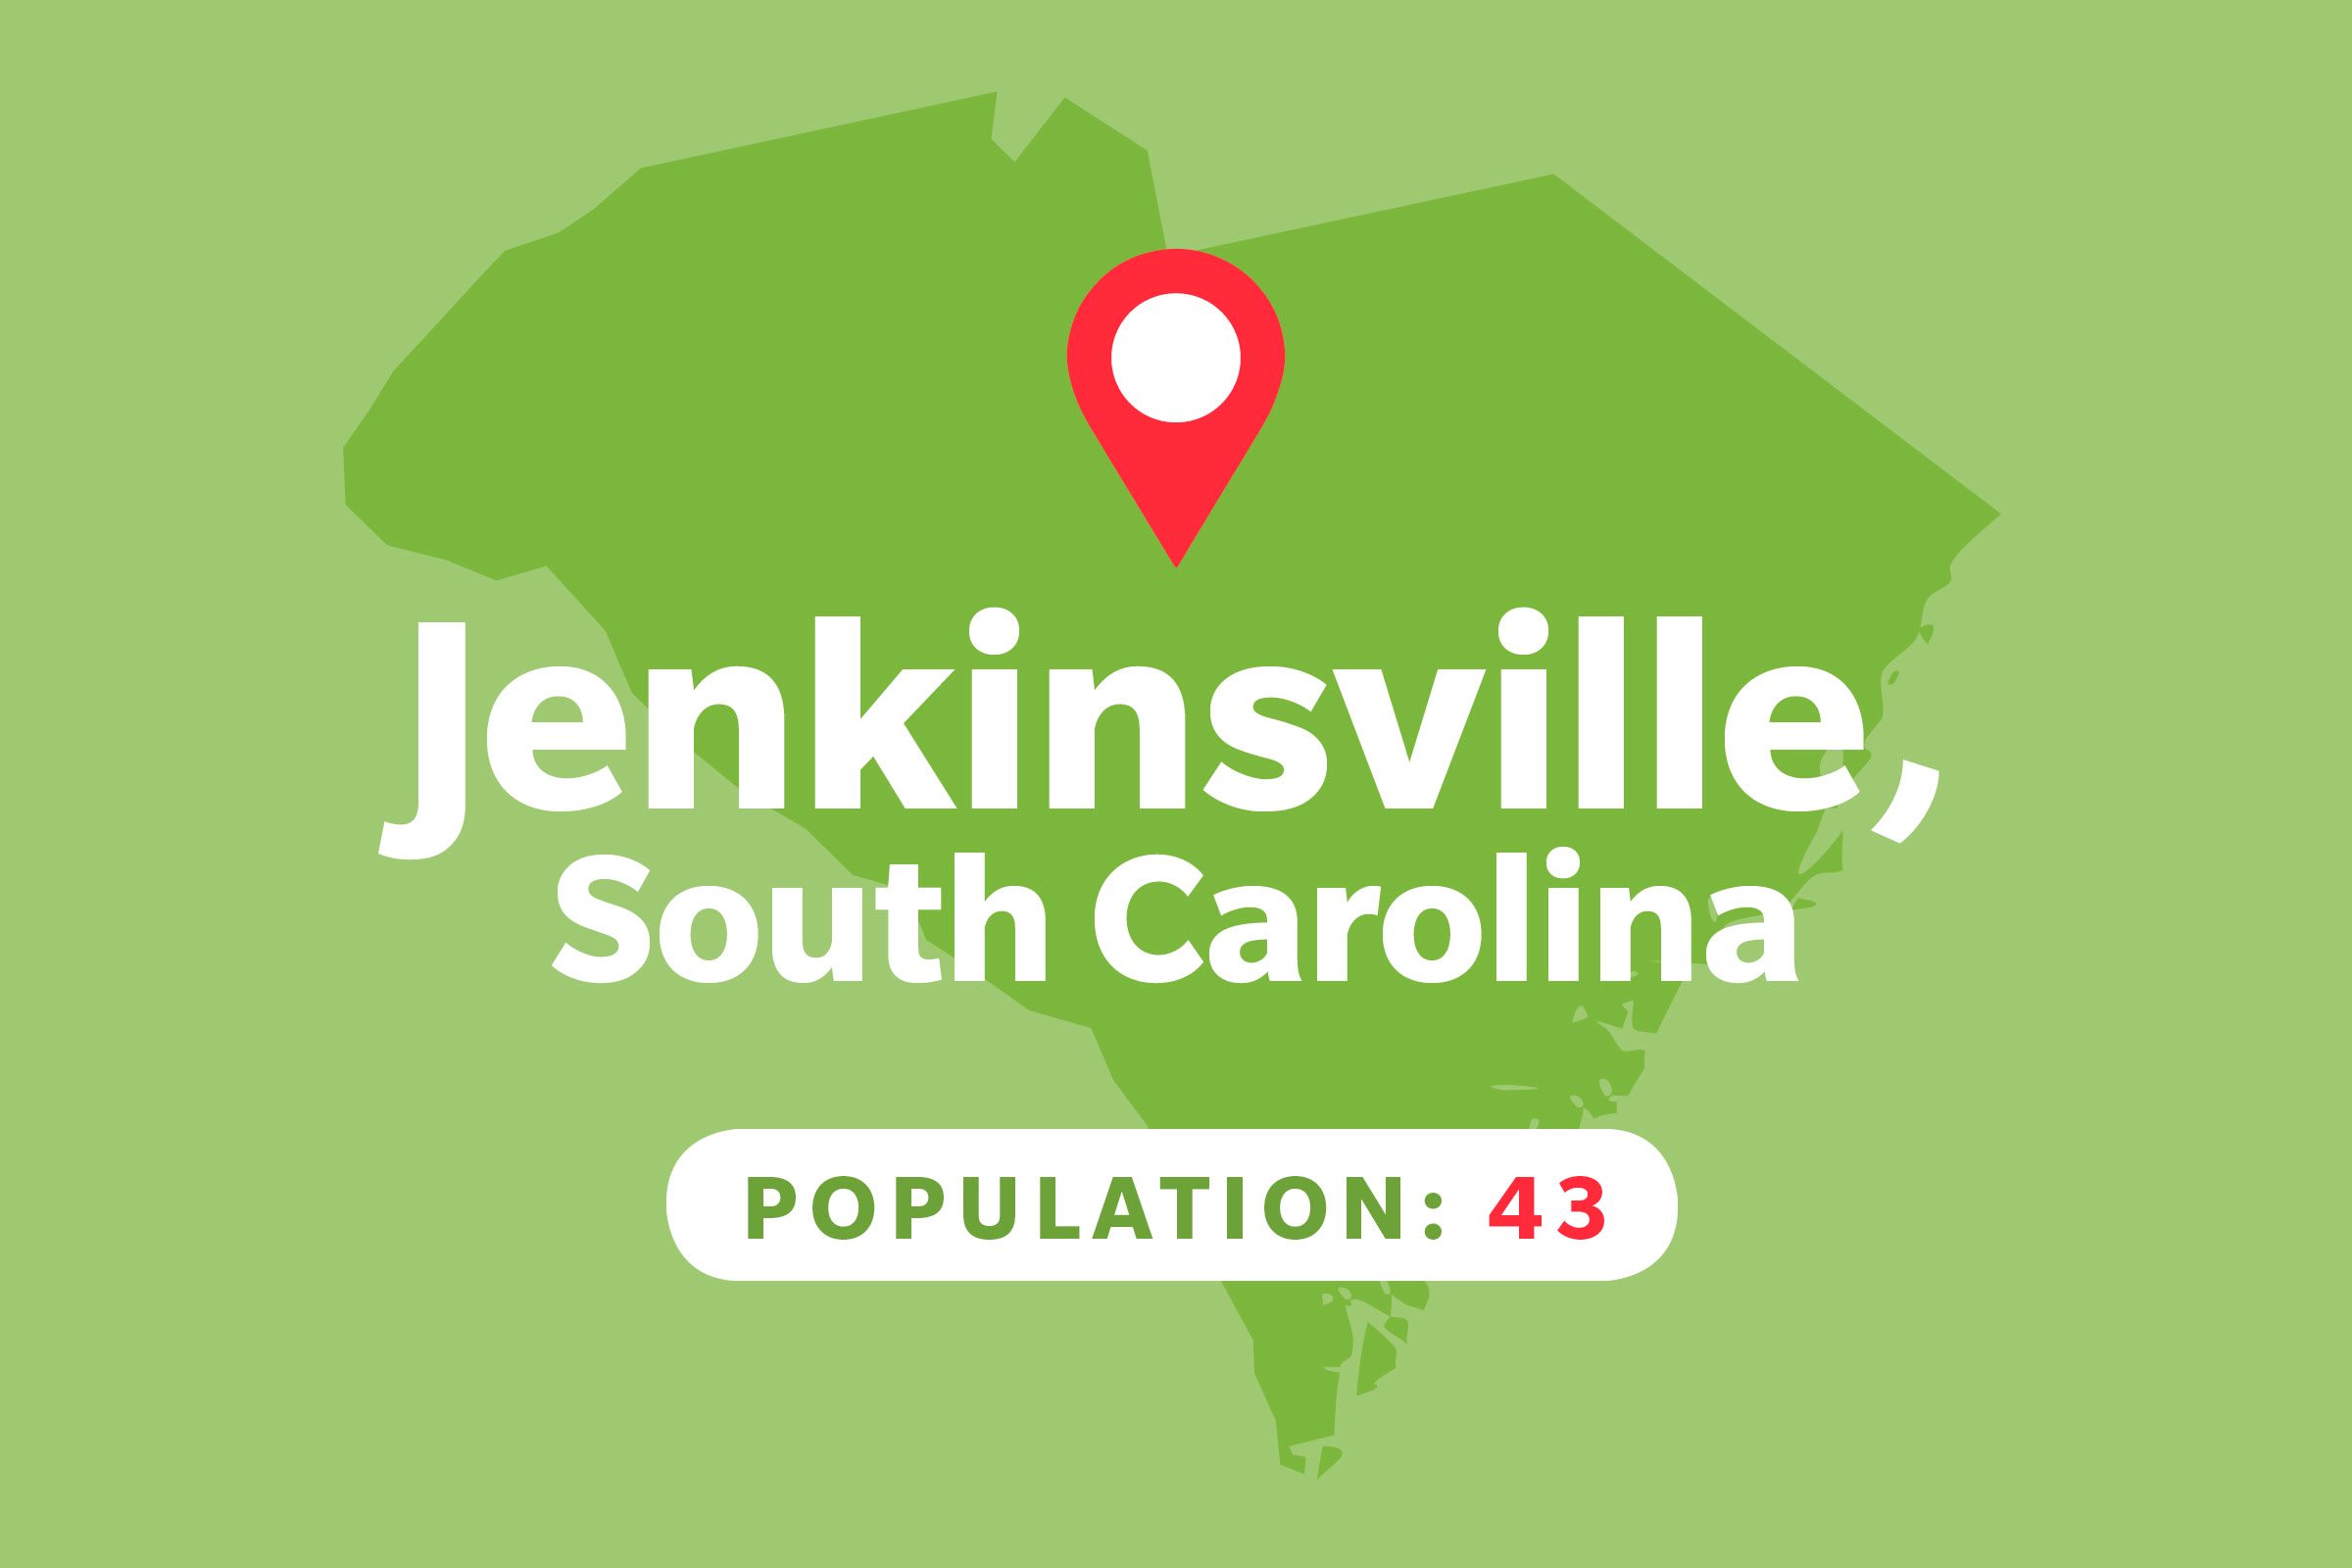 Jenkinsville, South Carolina 40